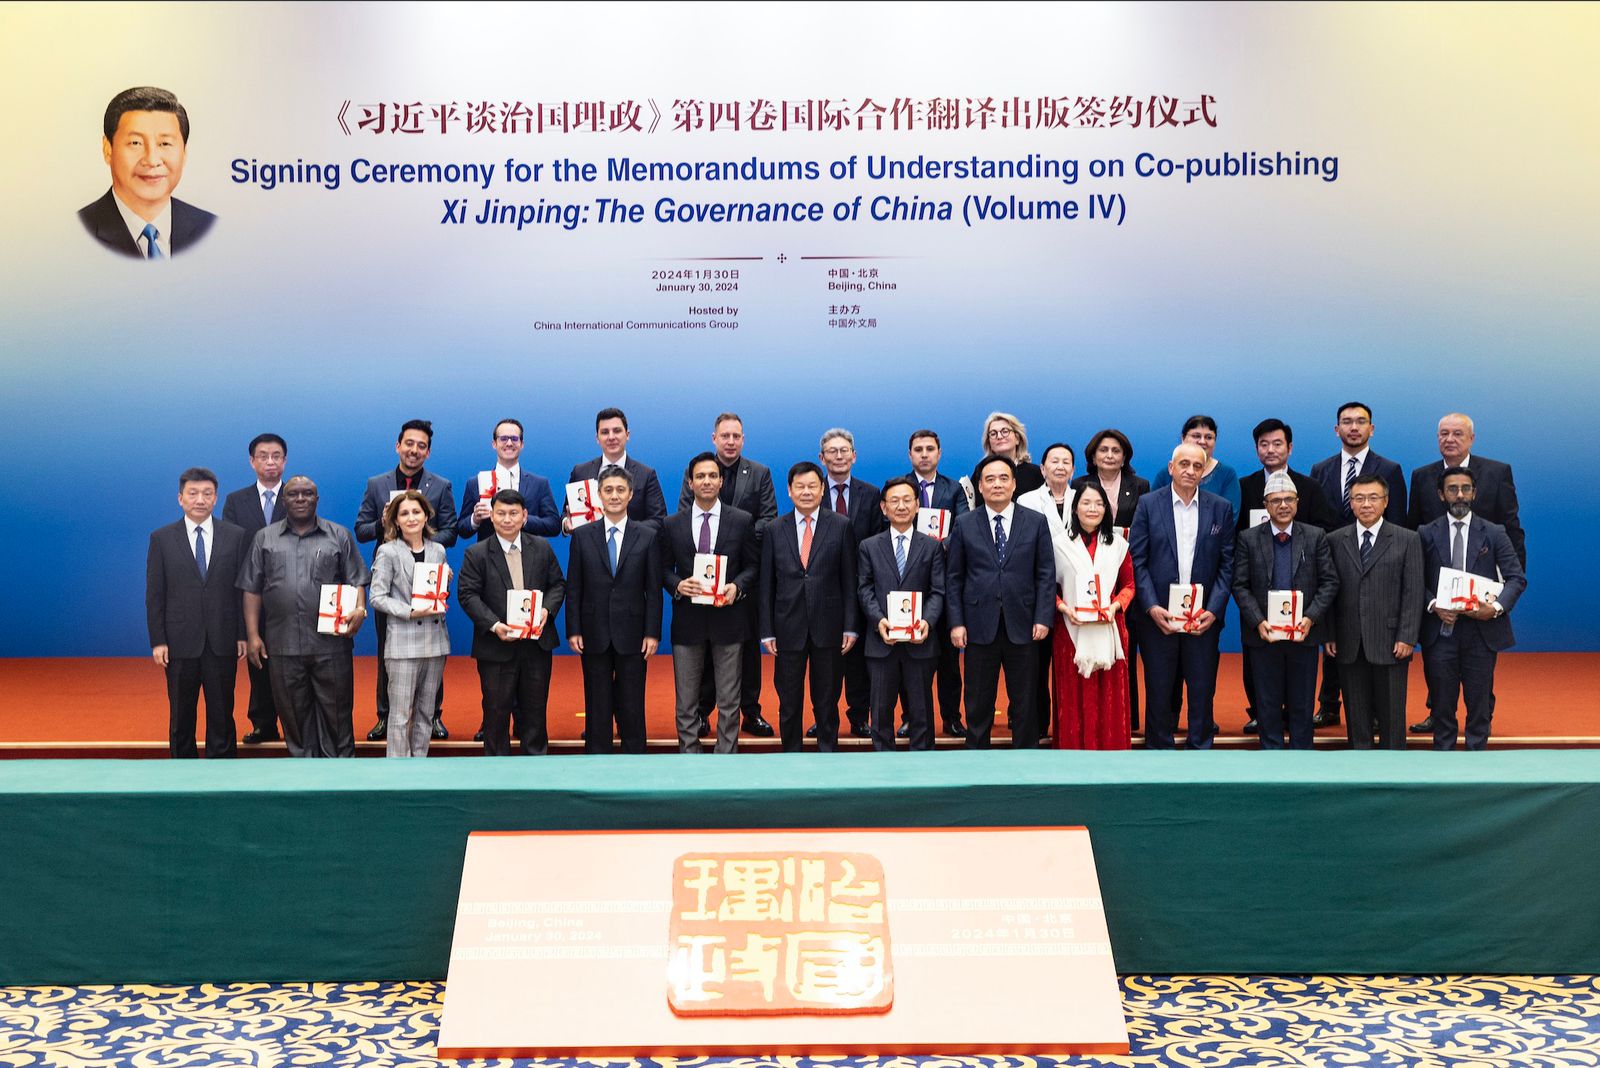 Pjesëmarrës në ceremoninë e nënshkrimit të marrëveshjes në Pekin